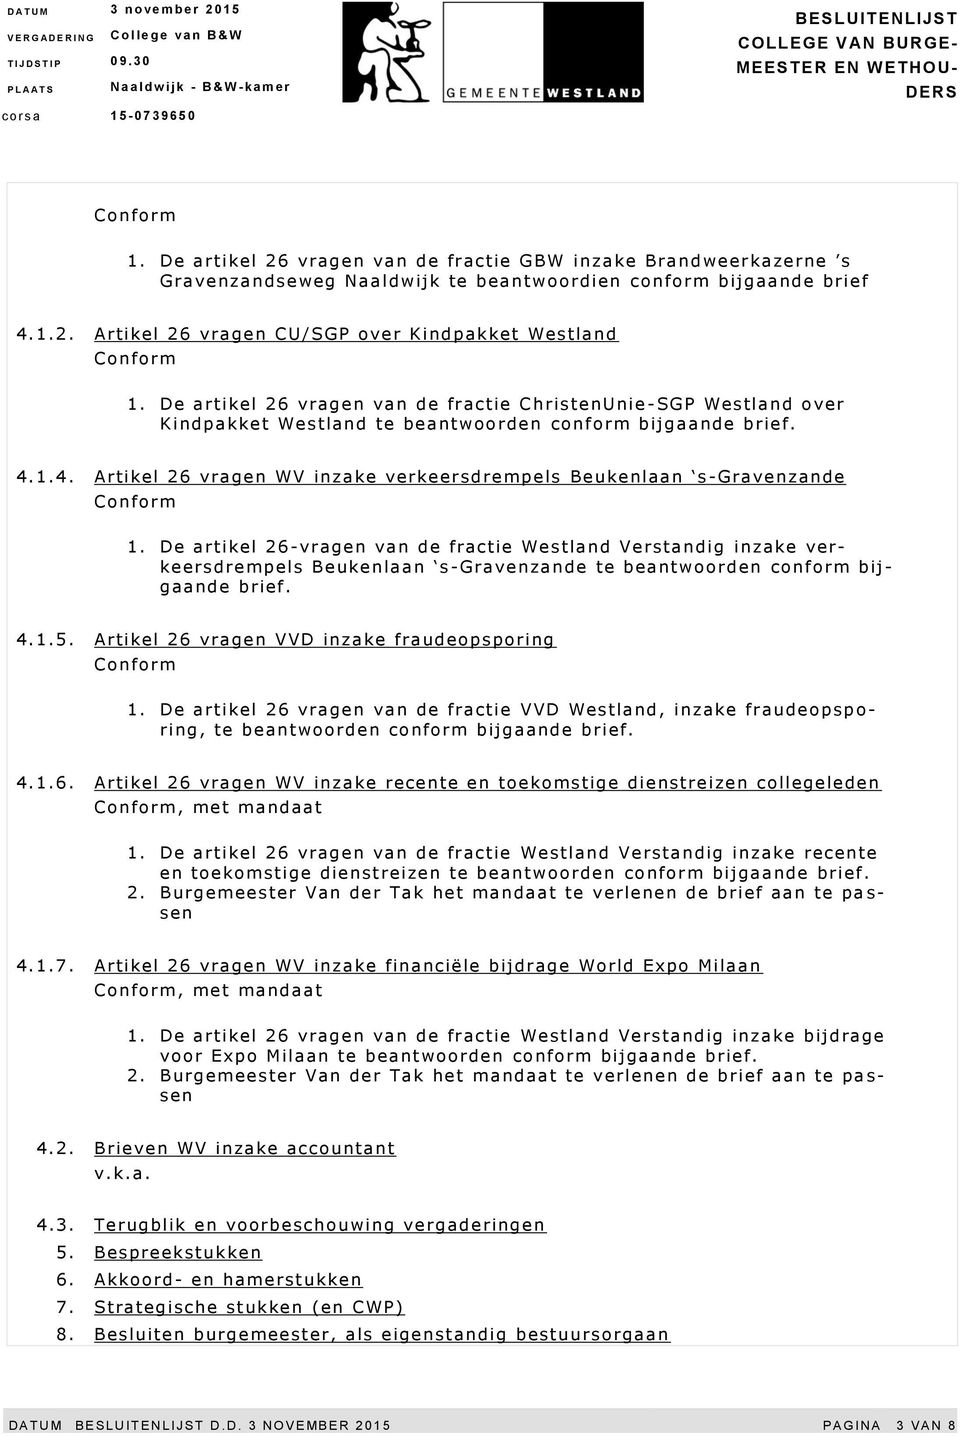 1.4. Artikel 26 vragen WV inzake verkeersdrempels Beukenlaan s -Gravenzande 1.